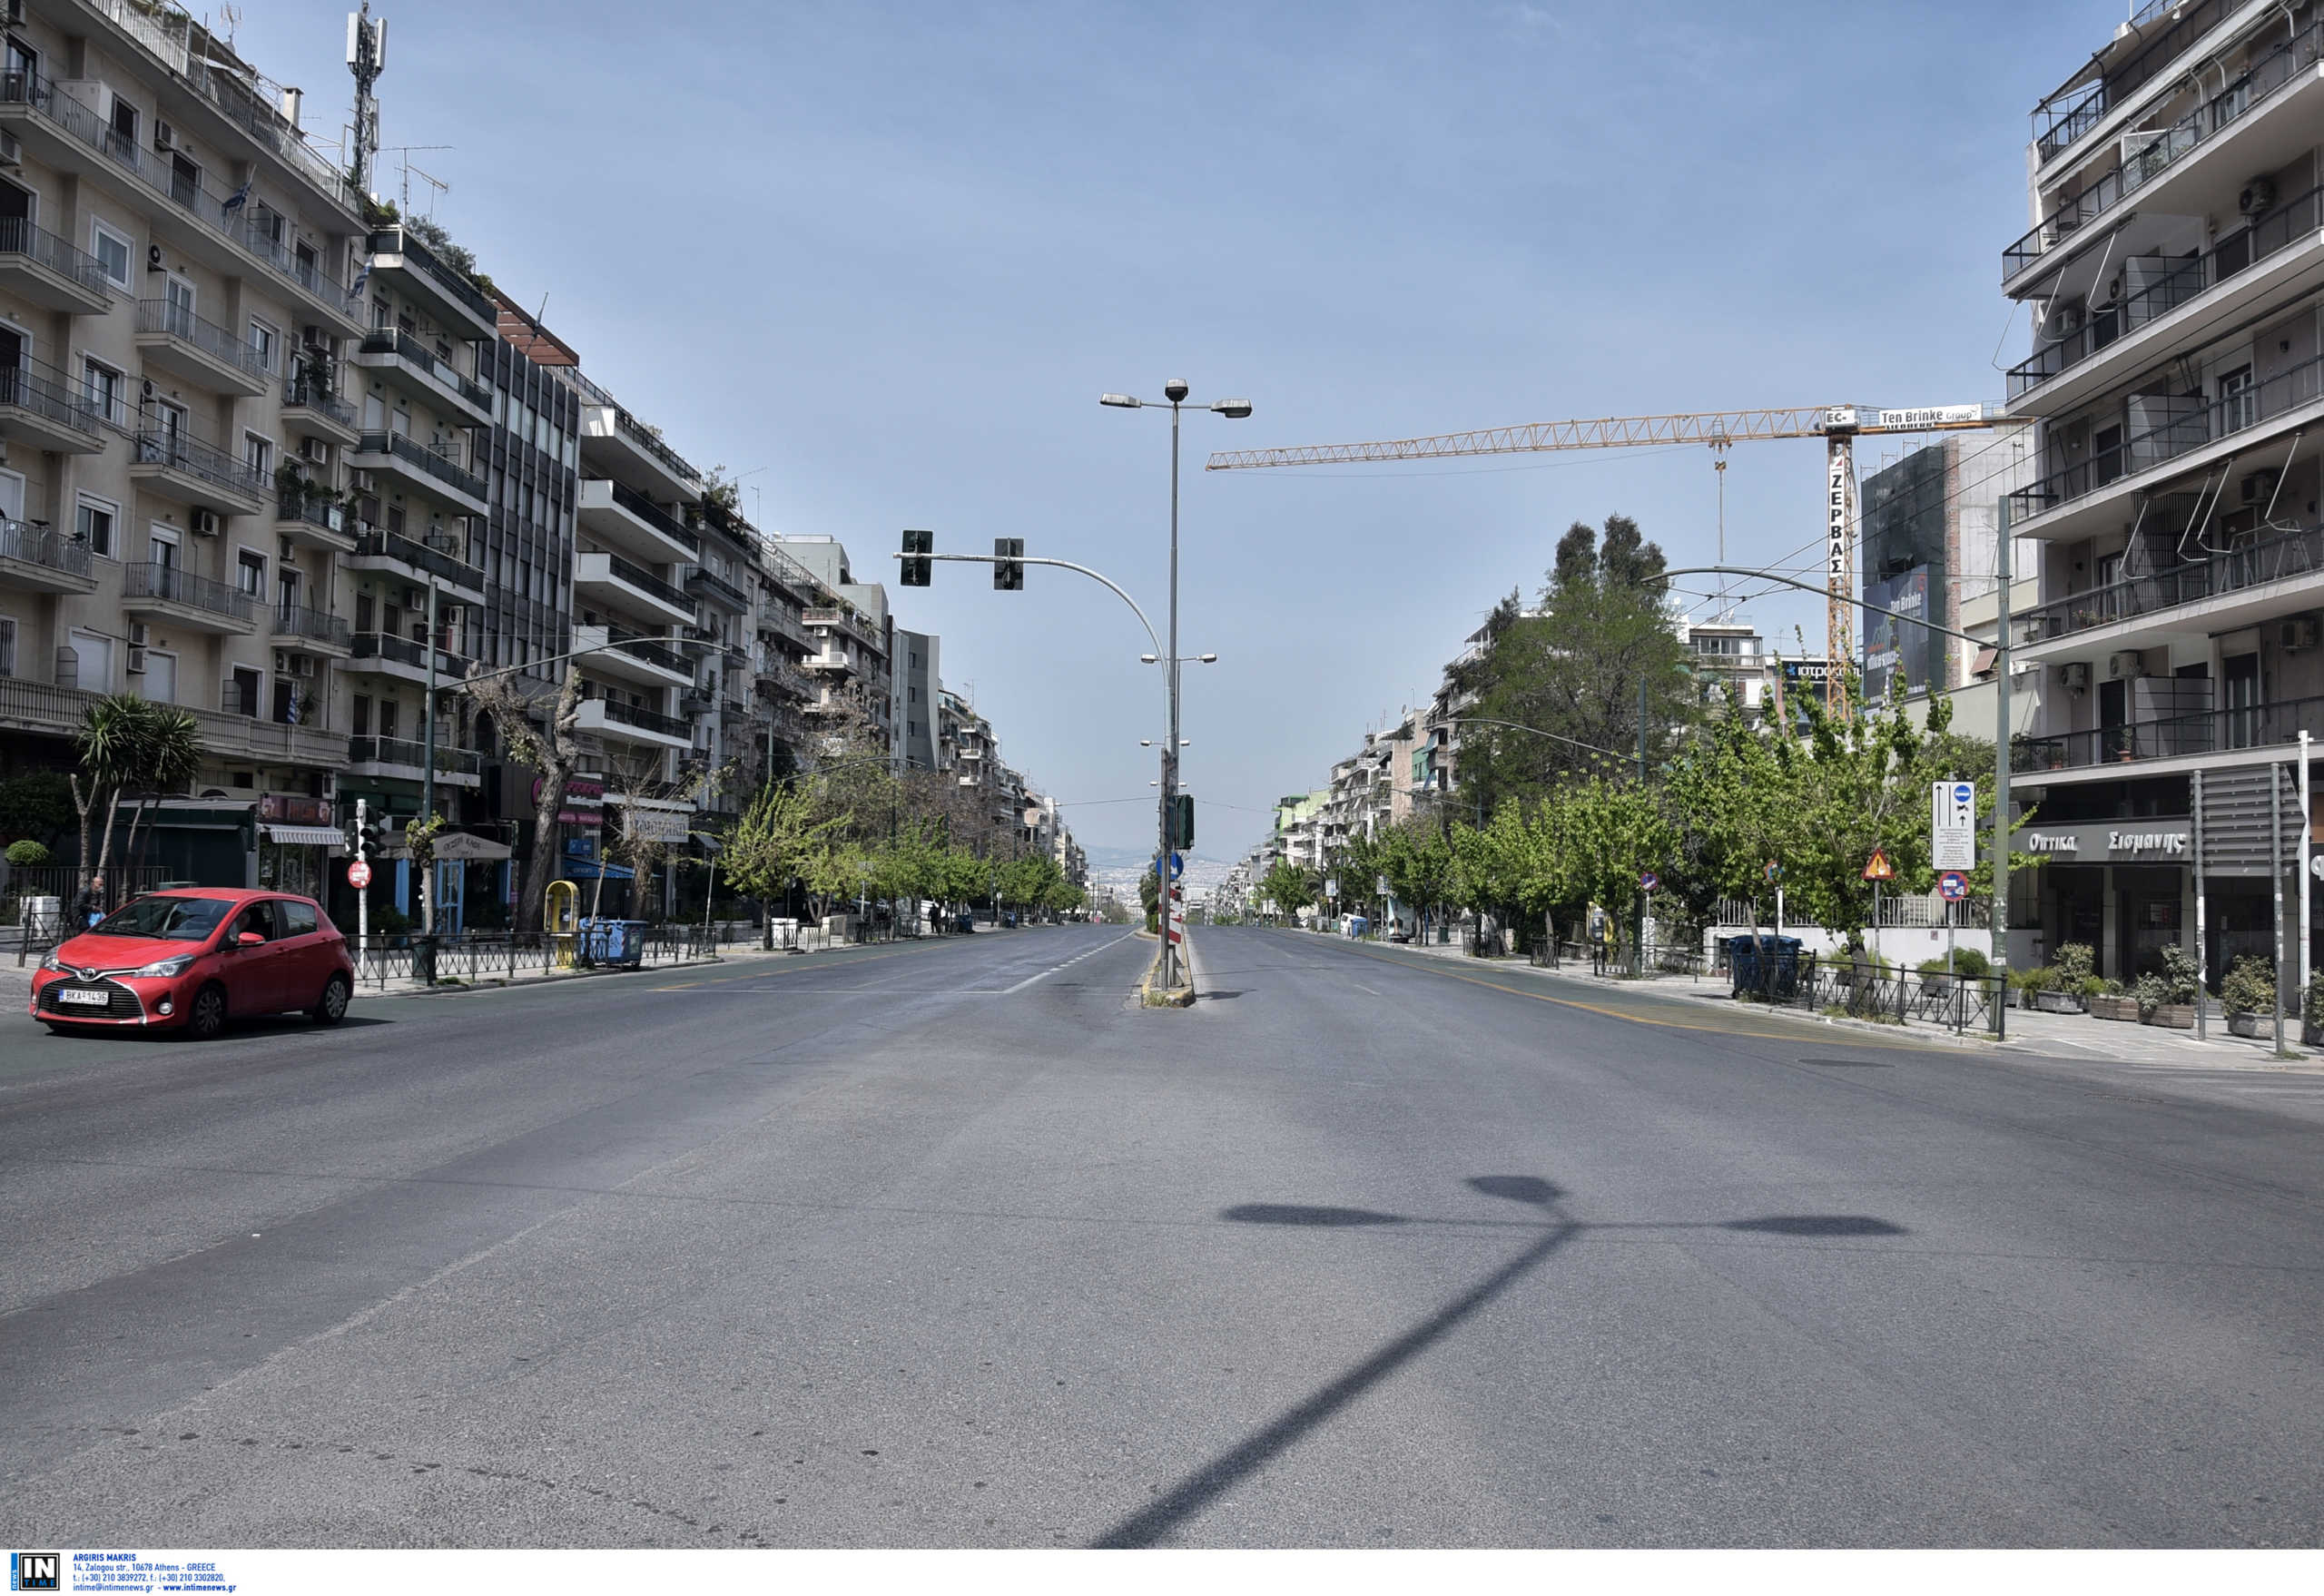 Μαραθώνιος Αθήνας 2022: Οι κυκλοφοριακές ρυθμίσεις το Σάββατο και την Κυριακή – Που διακόπτεται η κυκλοφορία